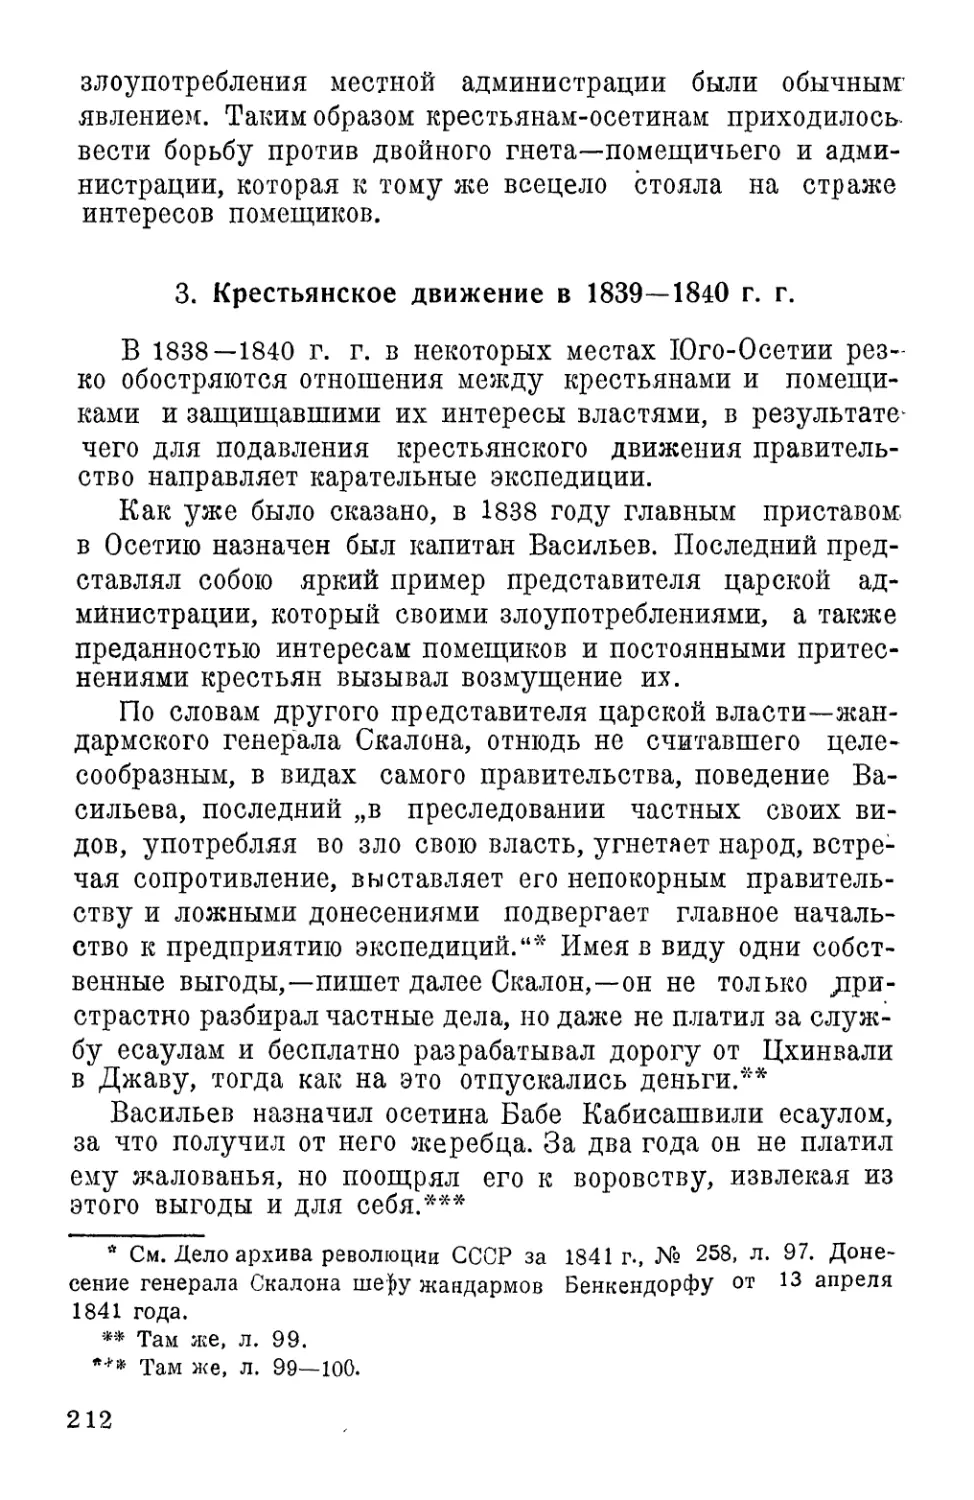 2. Крестьянское движение в 1839–1840 г.г.